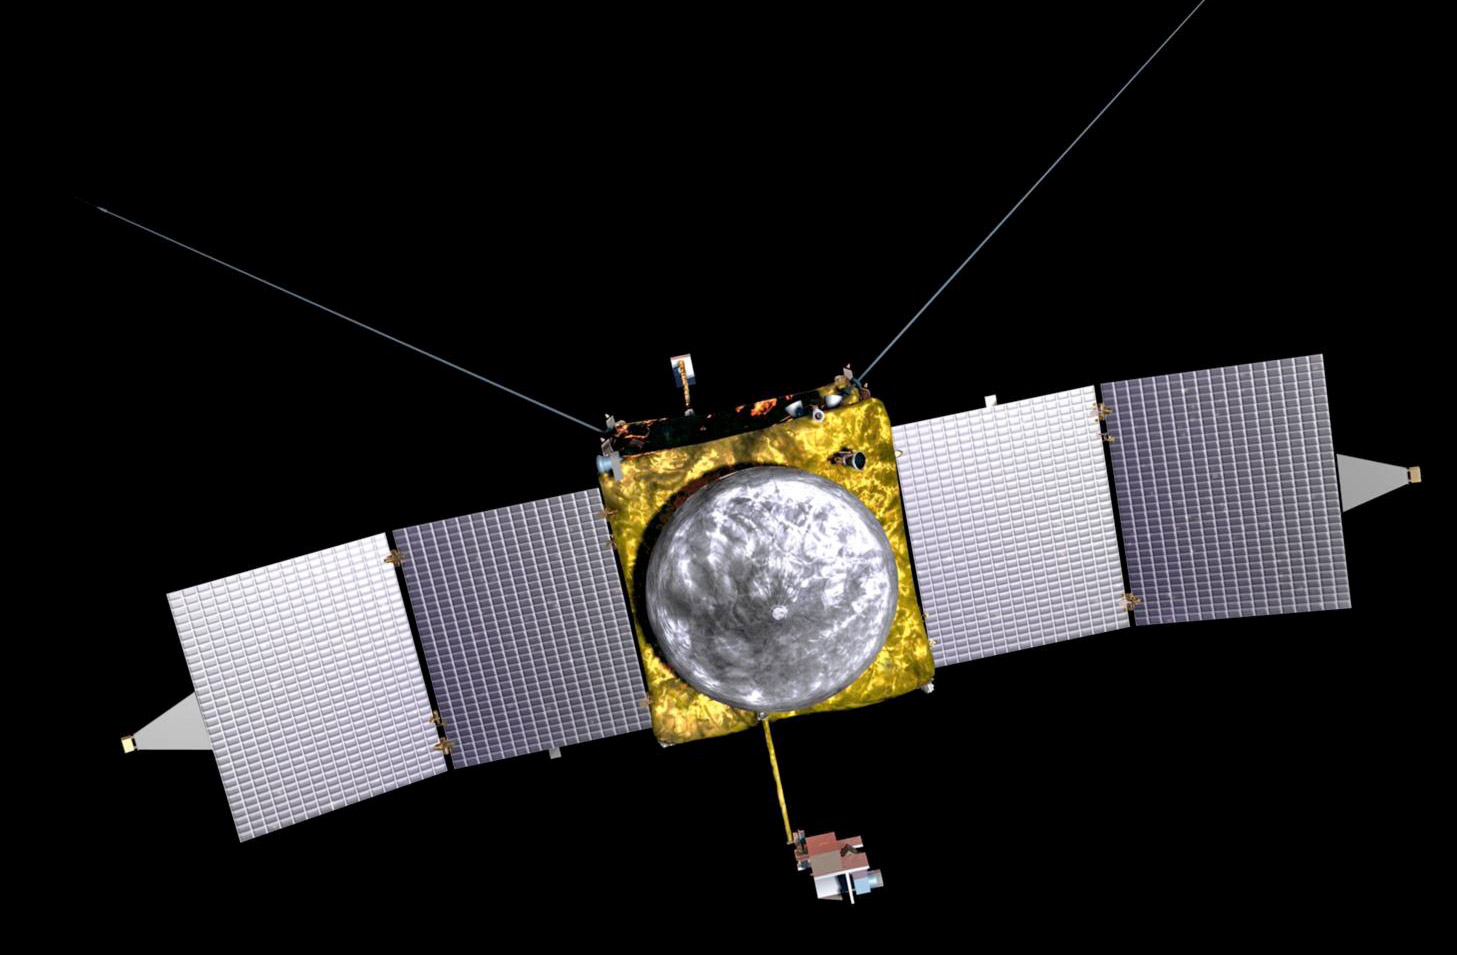 La sonde Maven de la Nasa sera construite par Lockheed Martin à partir de la même plateforme utilisée pour construire les sondes Mars Odyssey (2001) et Mars Reconnaissance Orbiter (2005). © Nasa